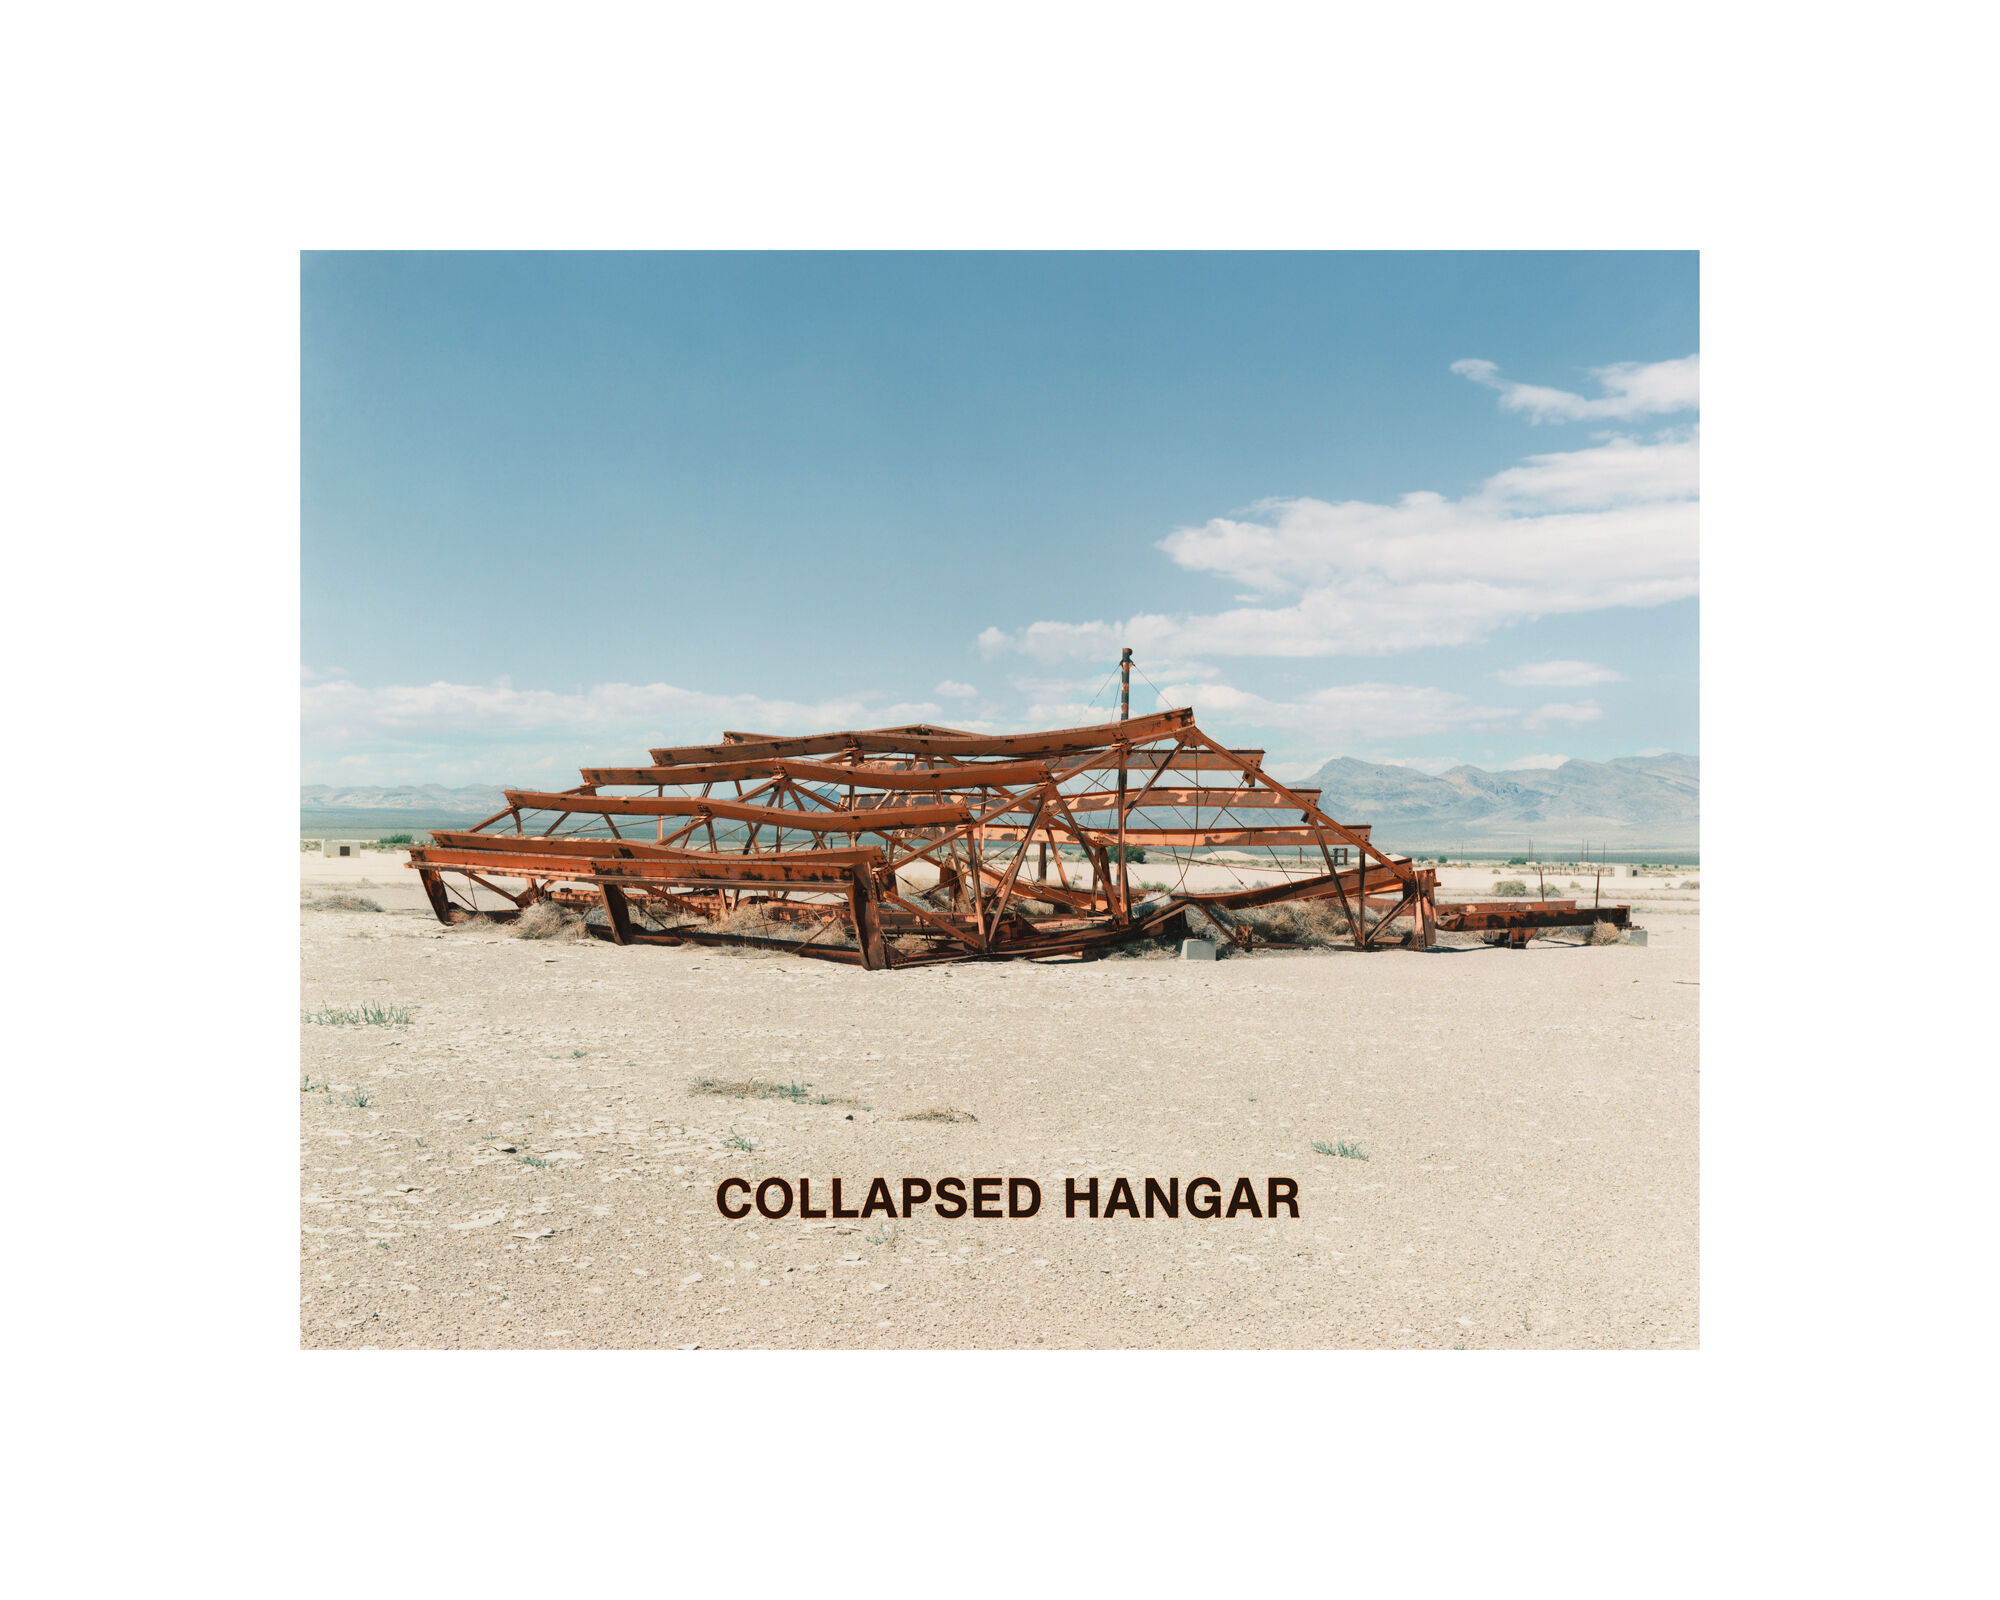 Collapsed Hanger